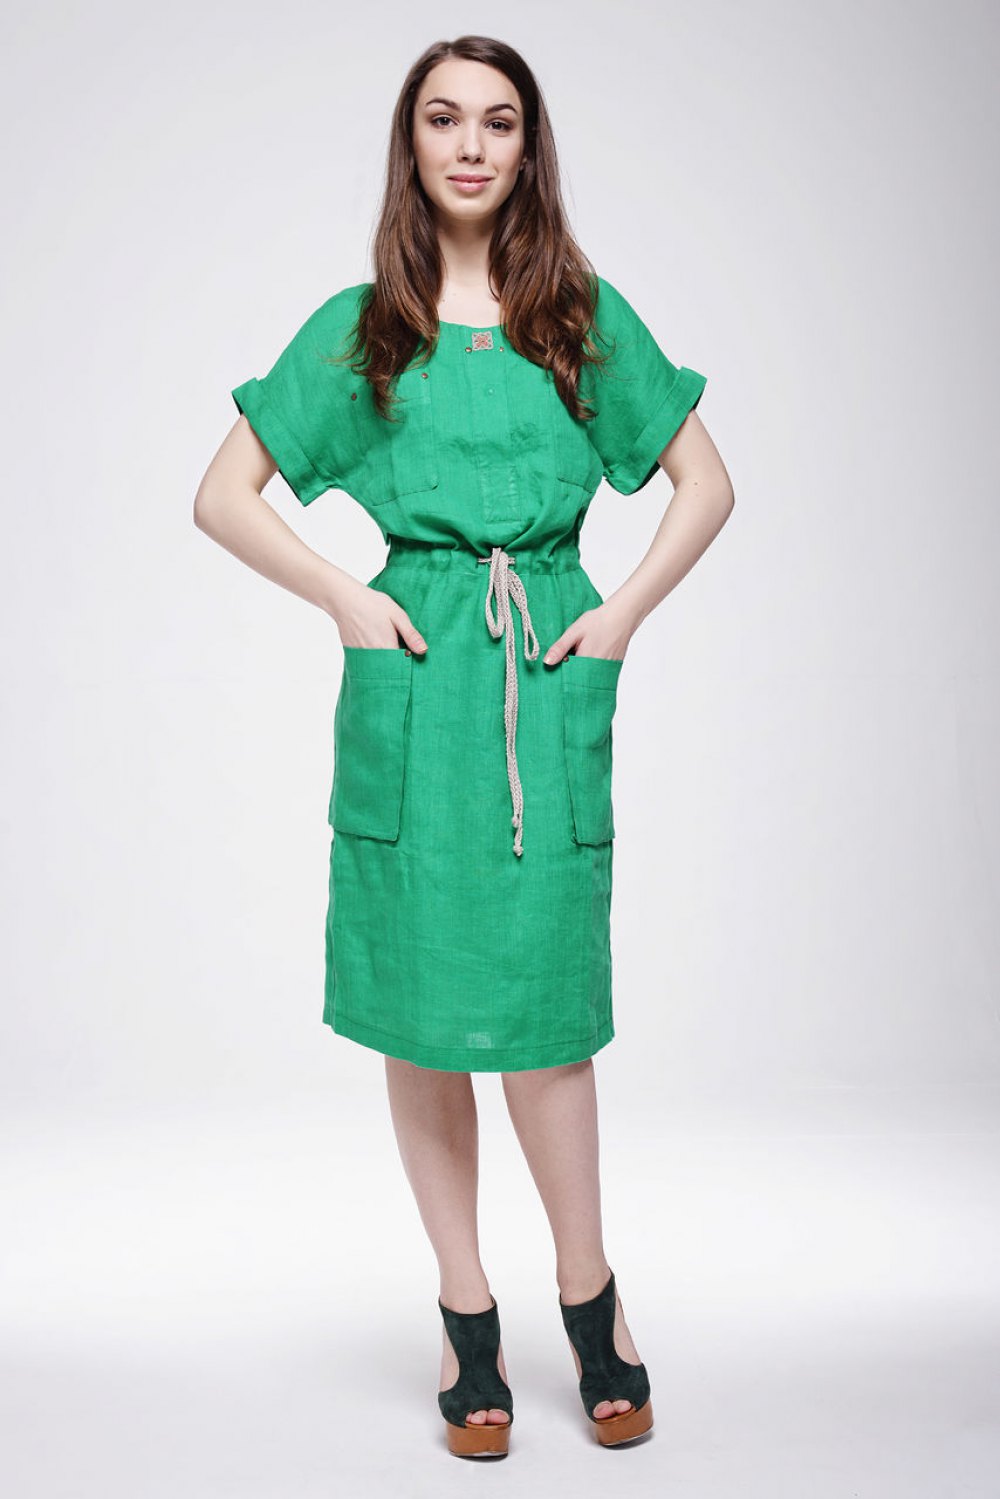 Платье женское "Сафари" модель 345/1 ярко-зеленое